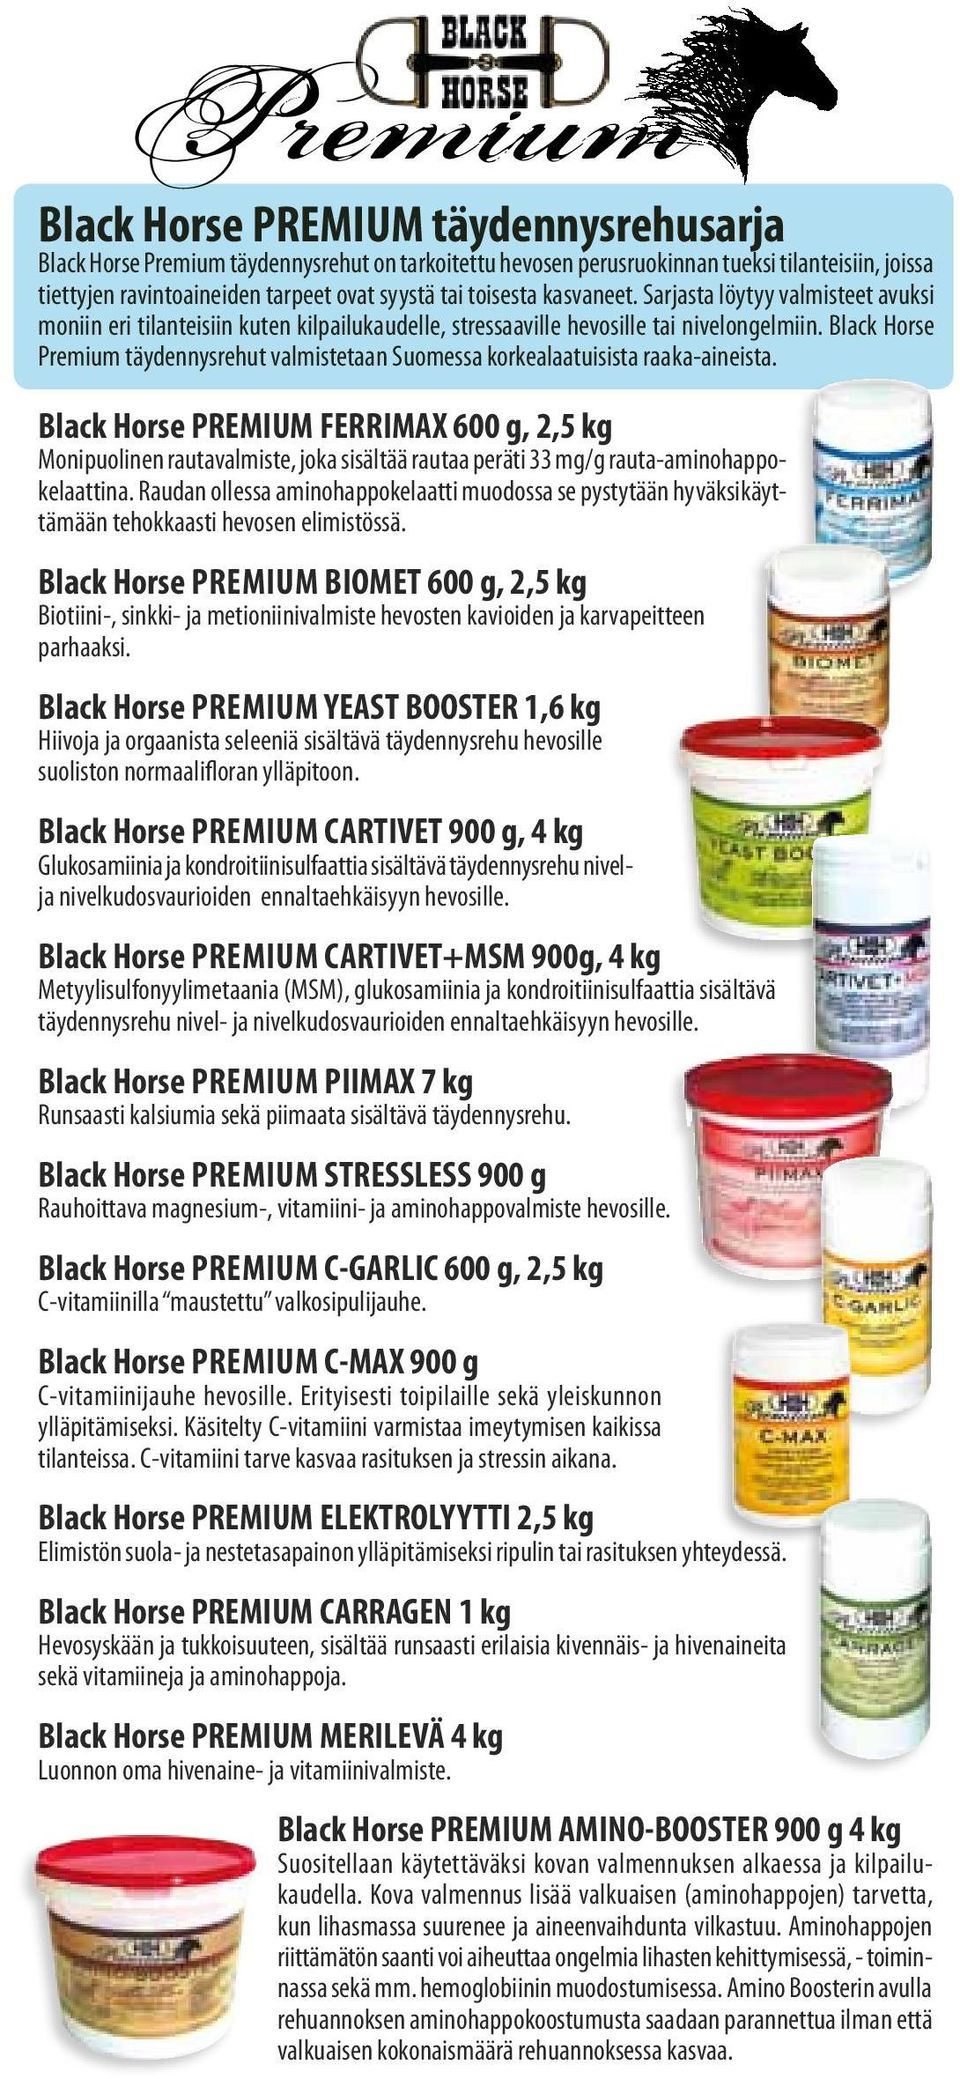 Black Horse Premium täydennysrehut valmistetaan Suomessa korkealaatuisista raaka-aineista.